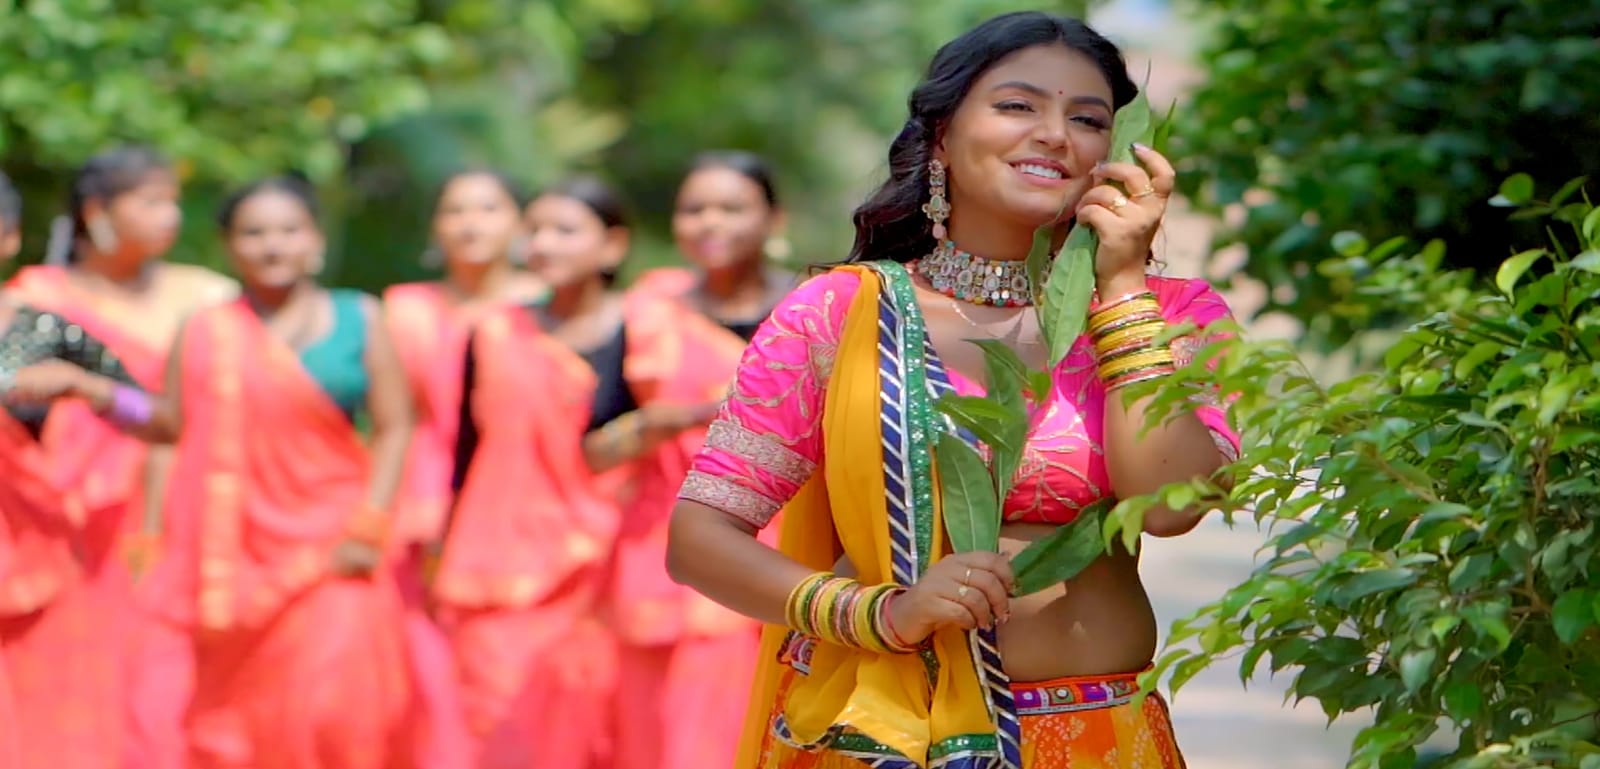 माही श्रीवास्तव और खुशी कक्कर का नया भोजपुरी लोकगीत 'राजा जी के तिलवा प दिलवा' वर्ल्डवाइड रिकार्ड्स से हुआ रिलीज